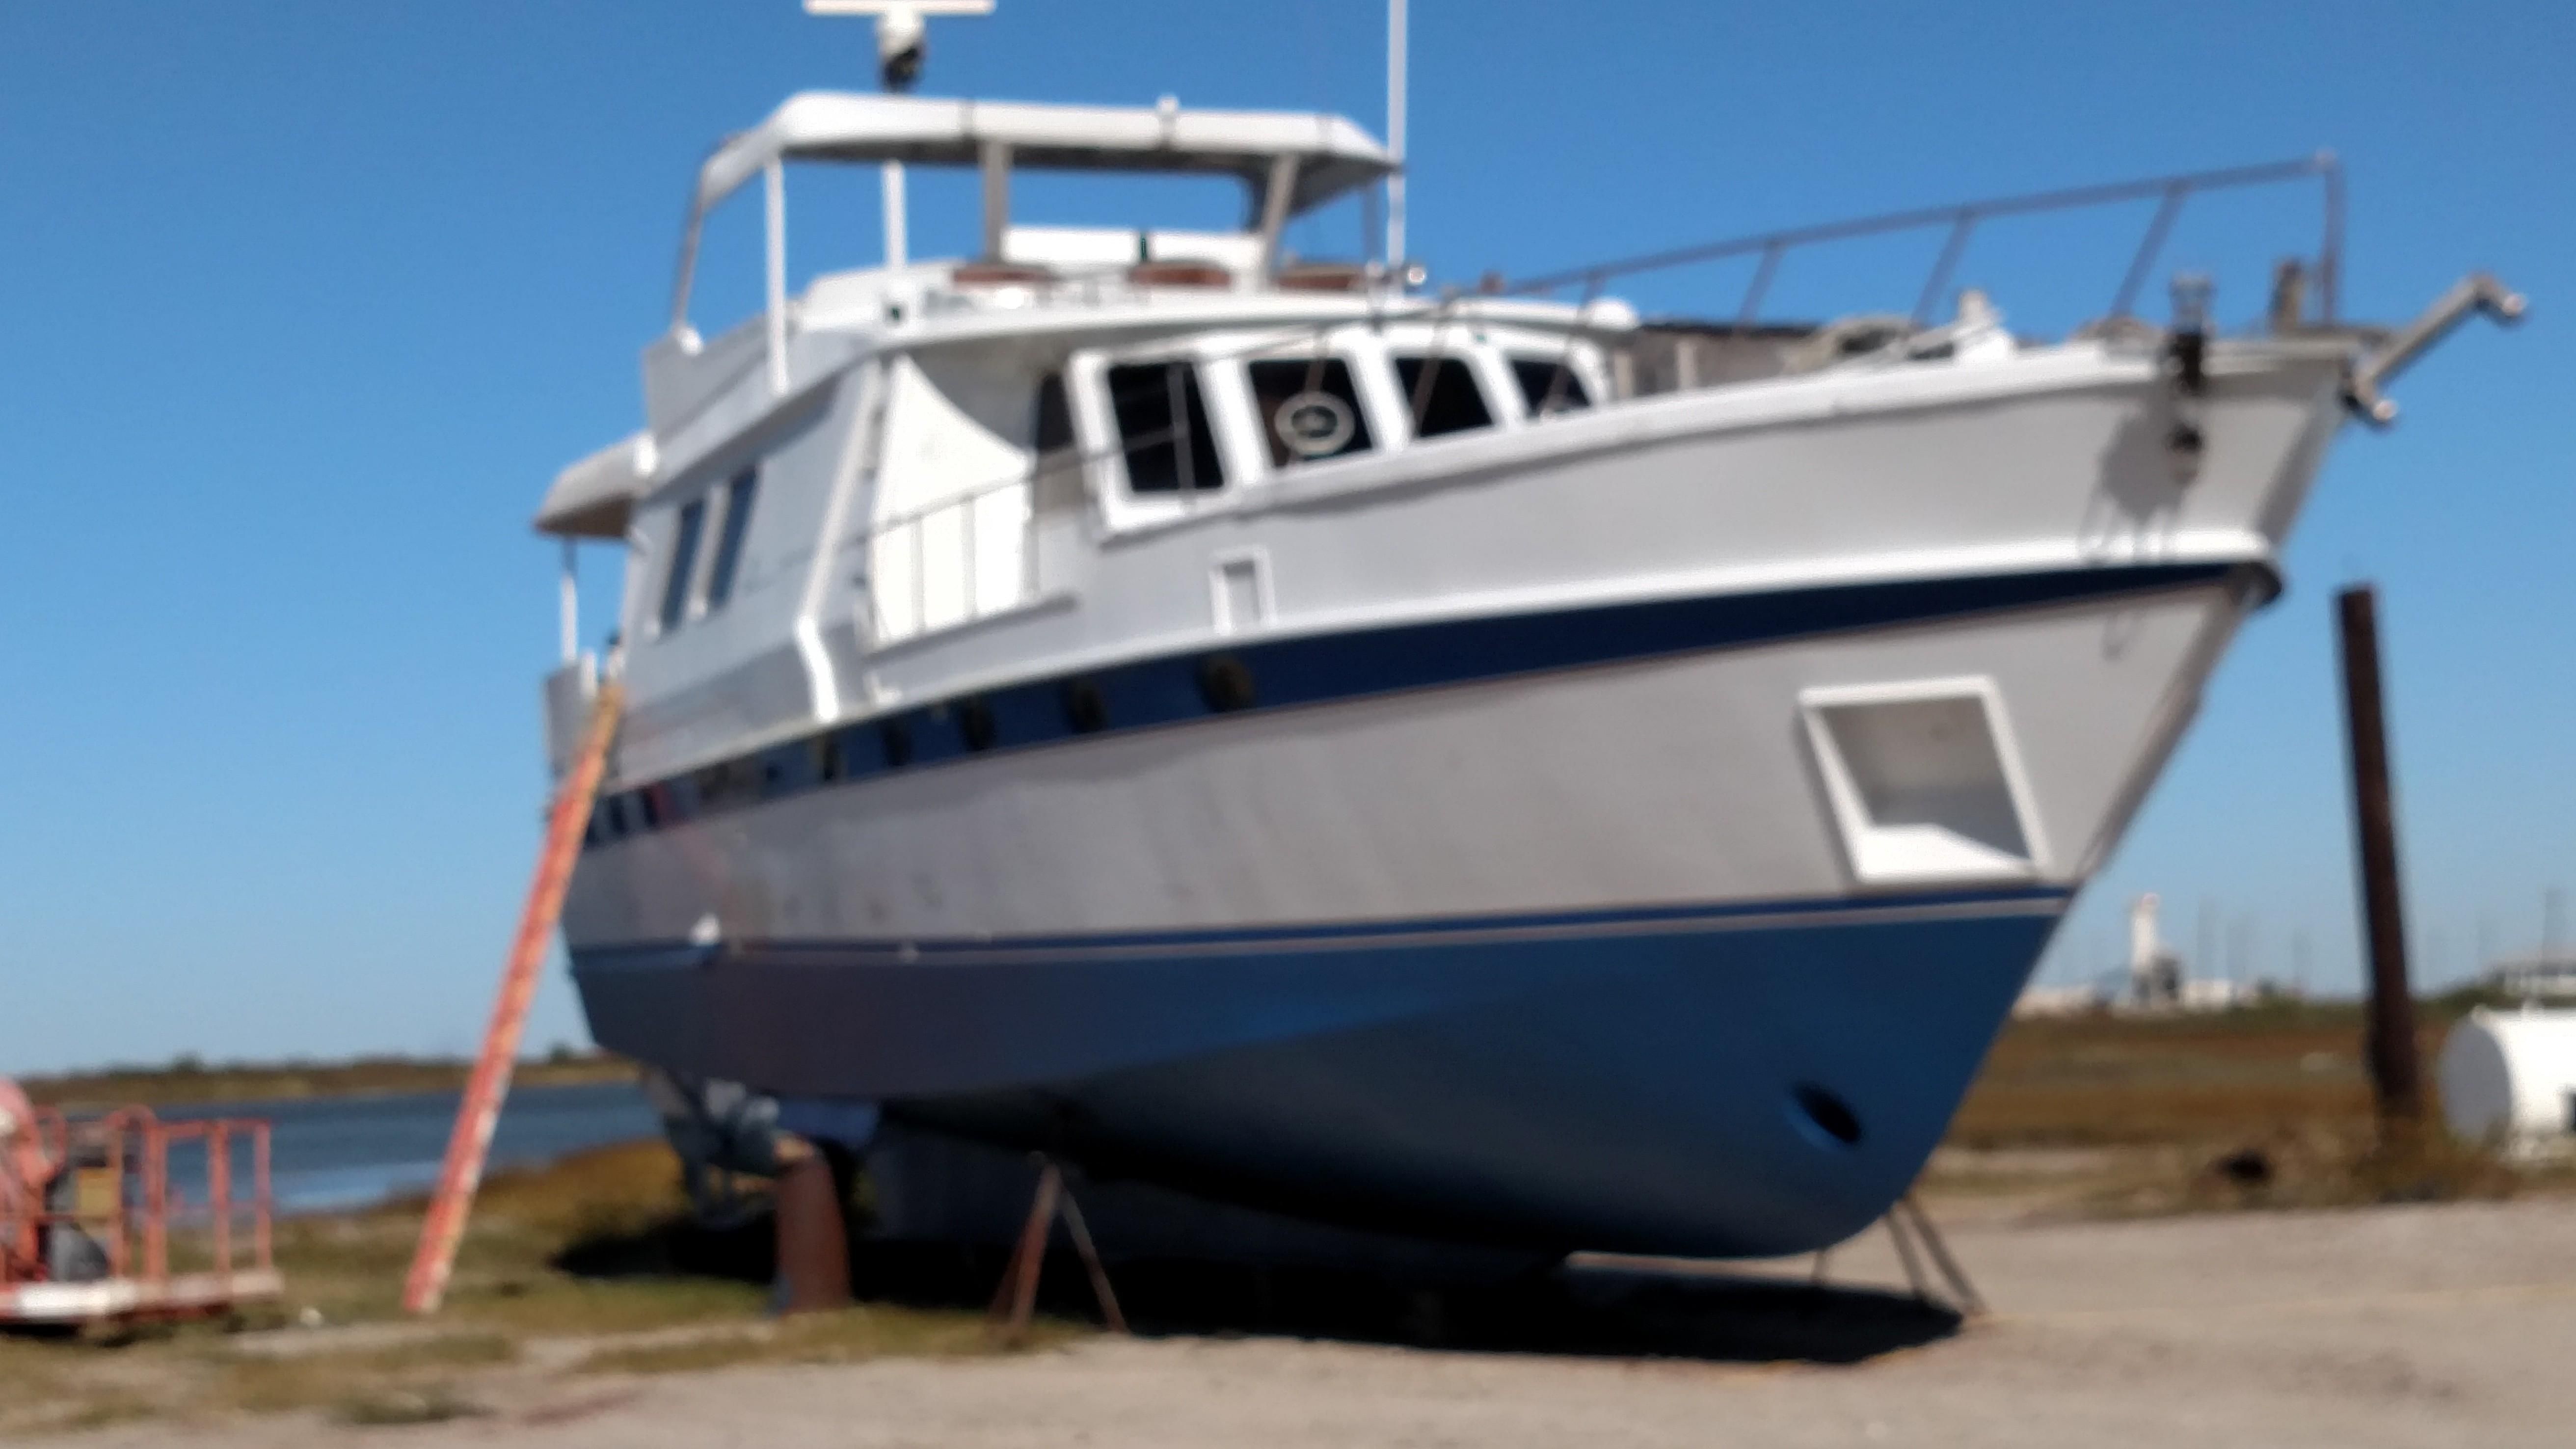 1995 De Groot 20 Meter Holland Craft Power Boat For Sale